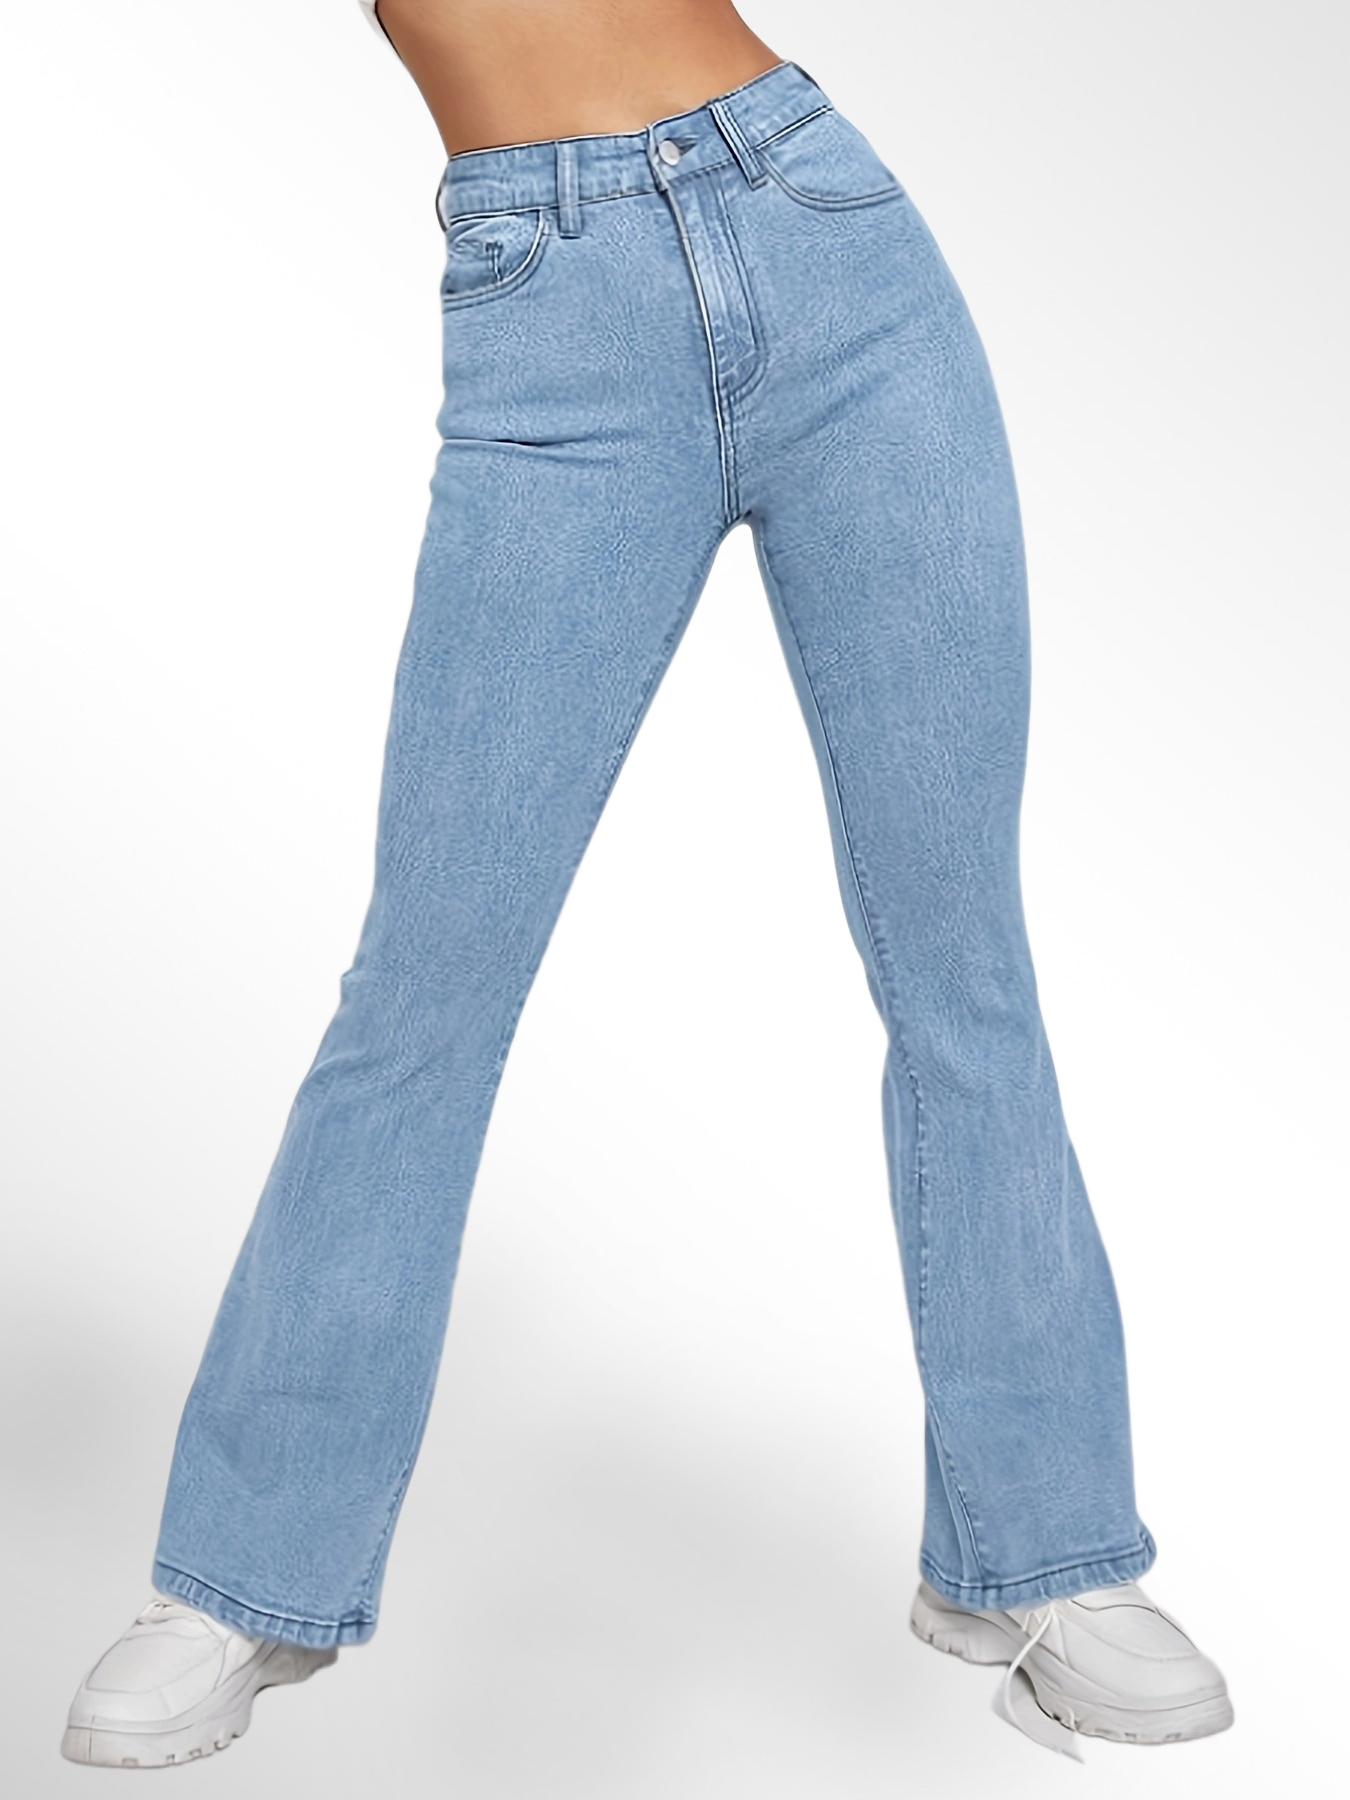 「binfenxie」High Waist High Strech Light Blue Bootcut Jeans, Zipper Button Closure Flare Leg Causal Denim Pants, Women's Denim Jeans & Clothing